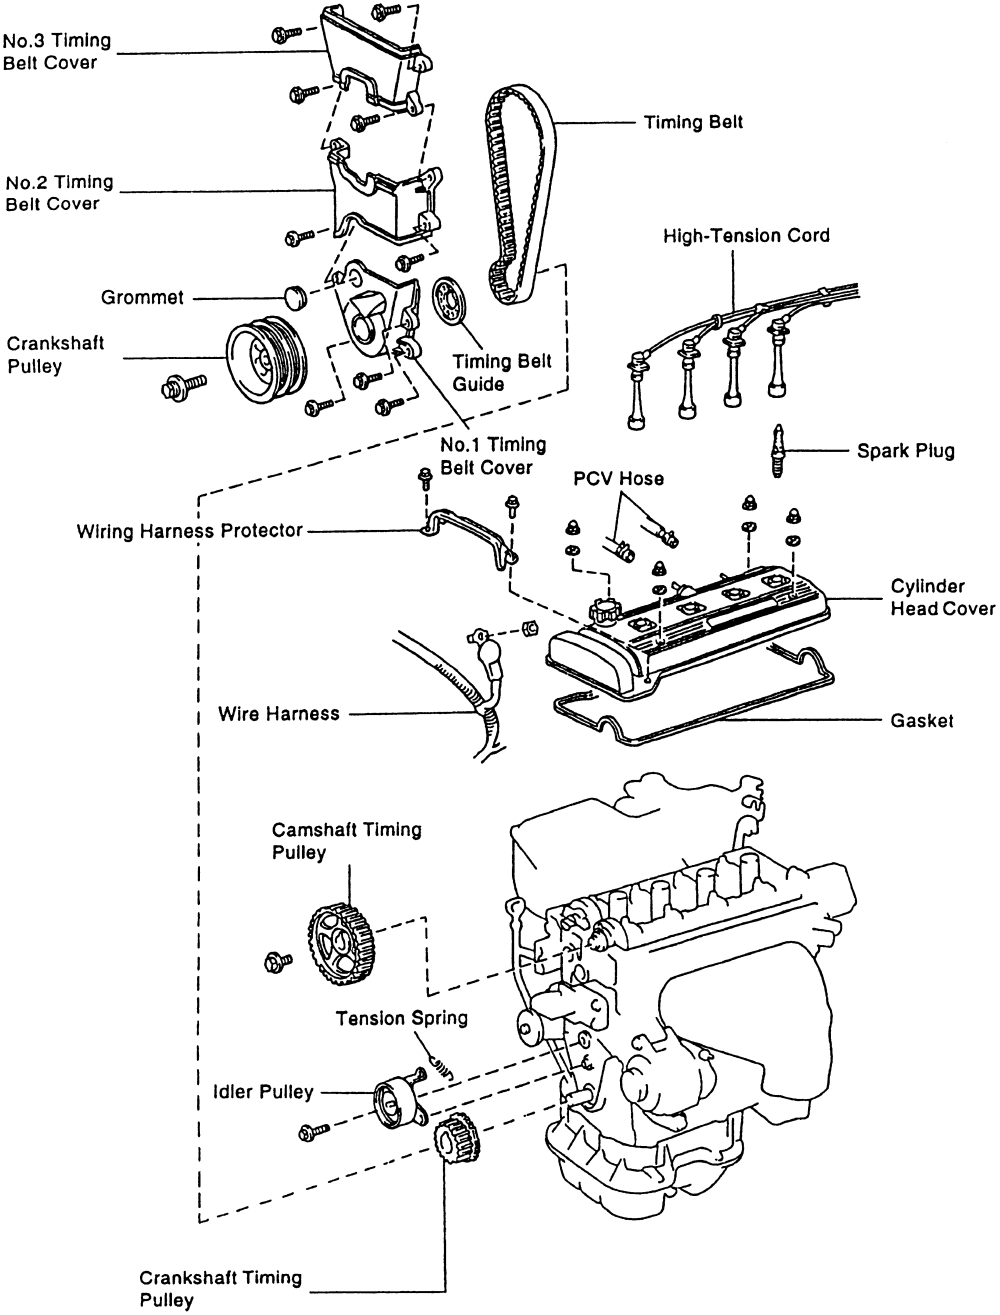 Toyota 4afe engine repair manual